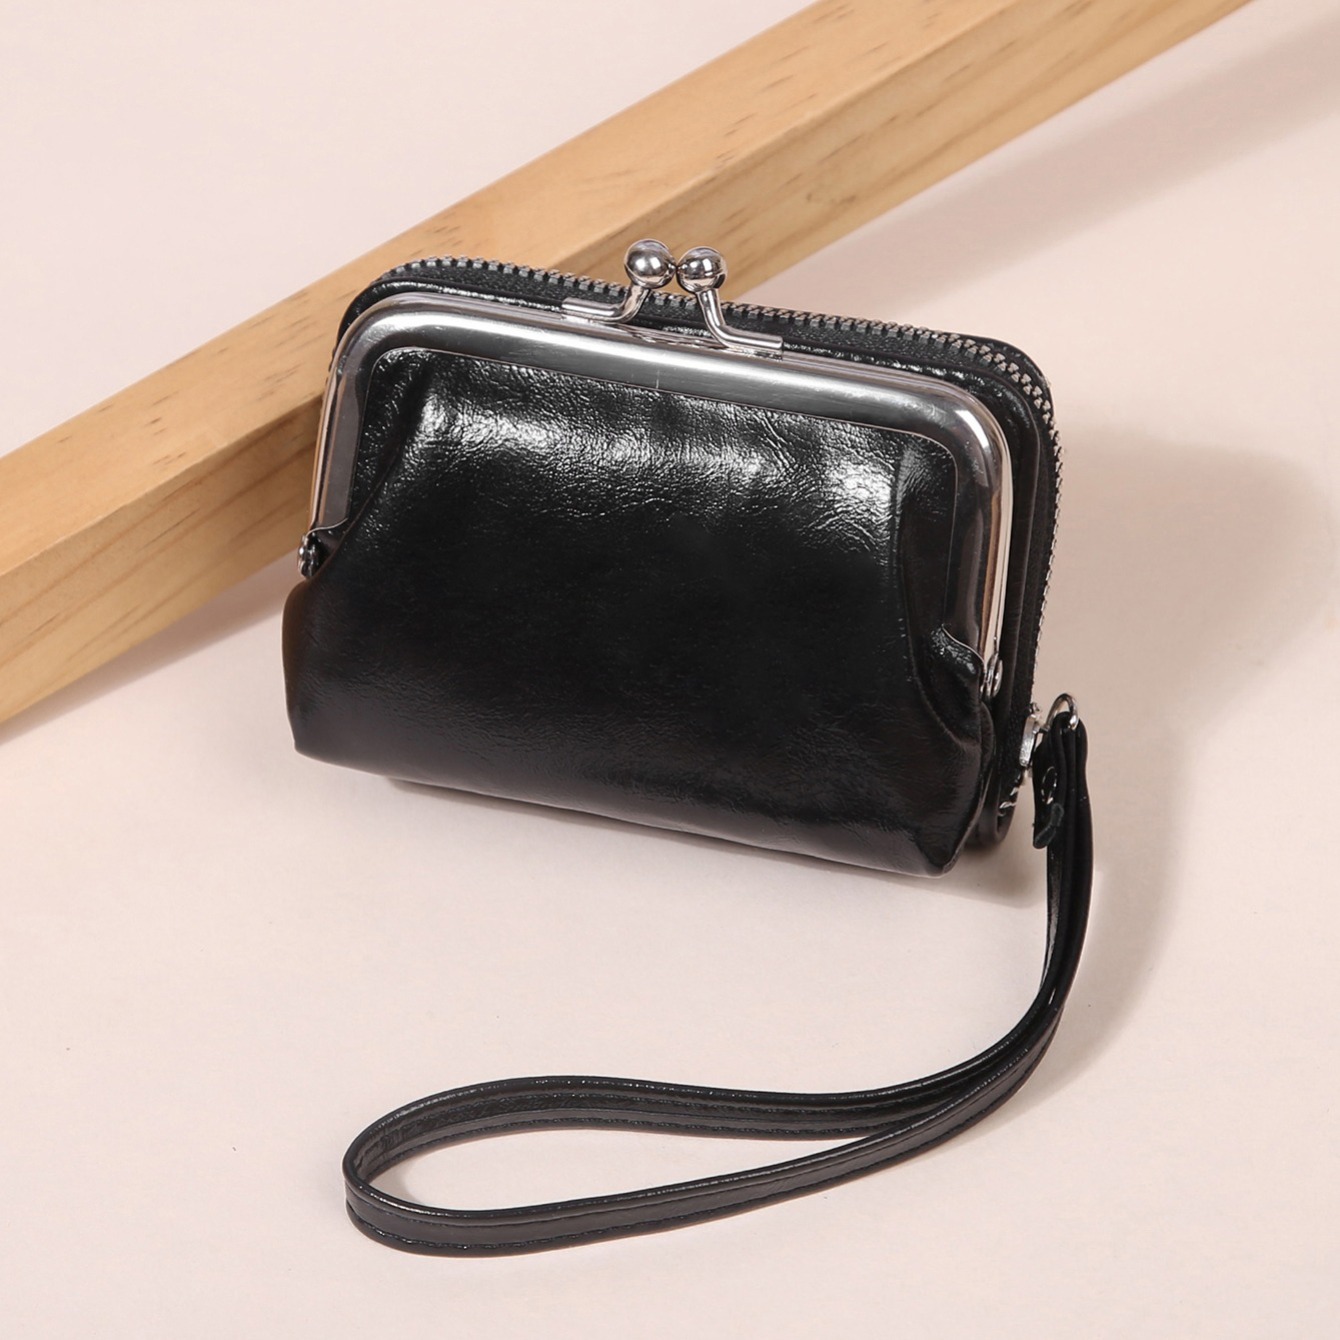 Large Leather Wallet, Twist Lock Wallet, Leather Purse, Women's Leather Wallets, Brown Wallet